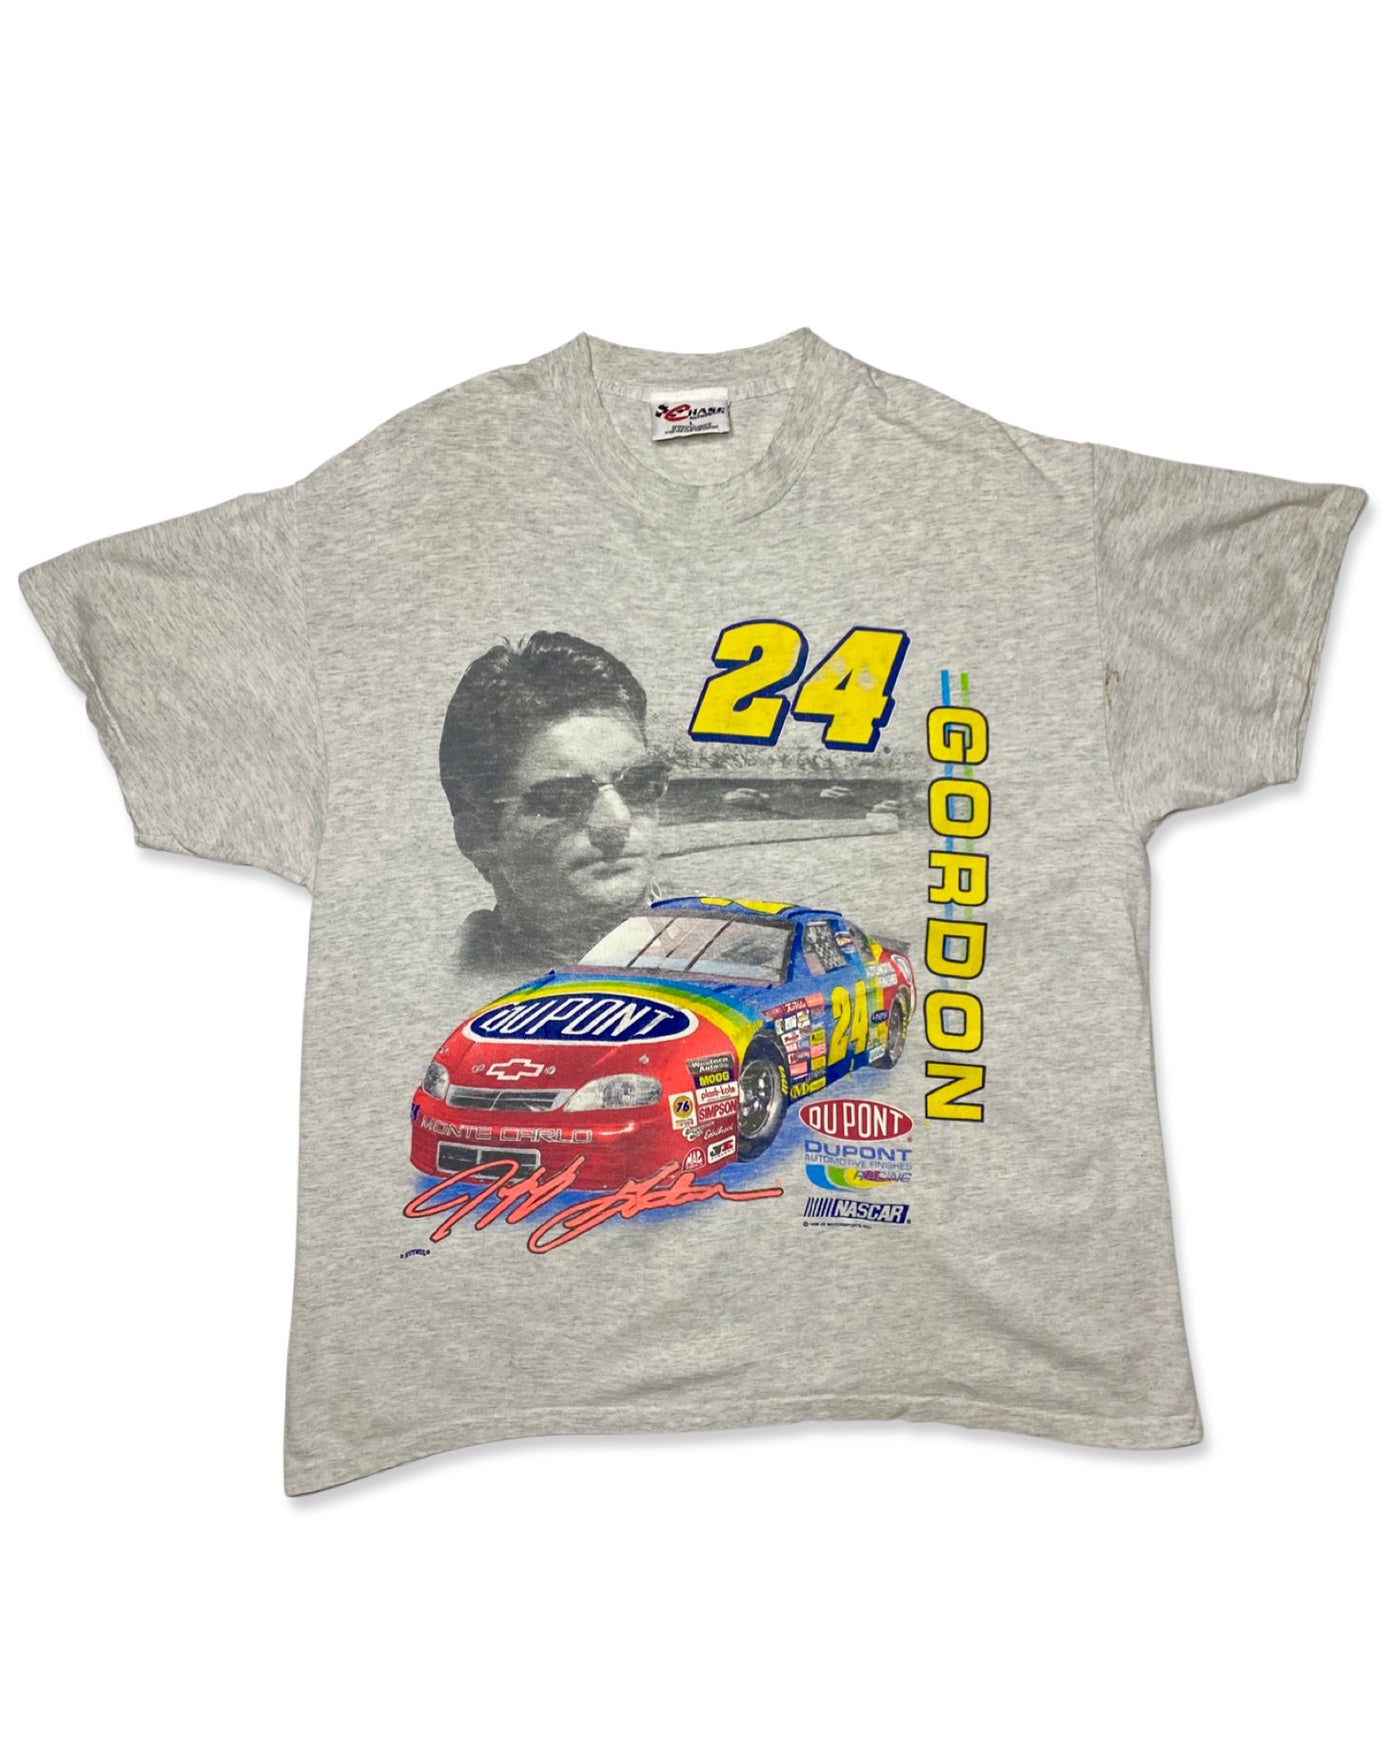 Vintage 1998 Jeff Gordon Racing T-Shirt